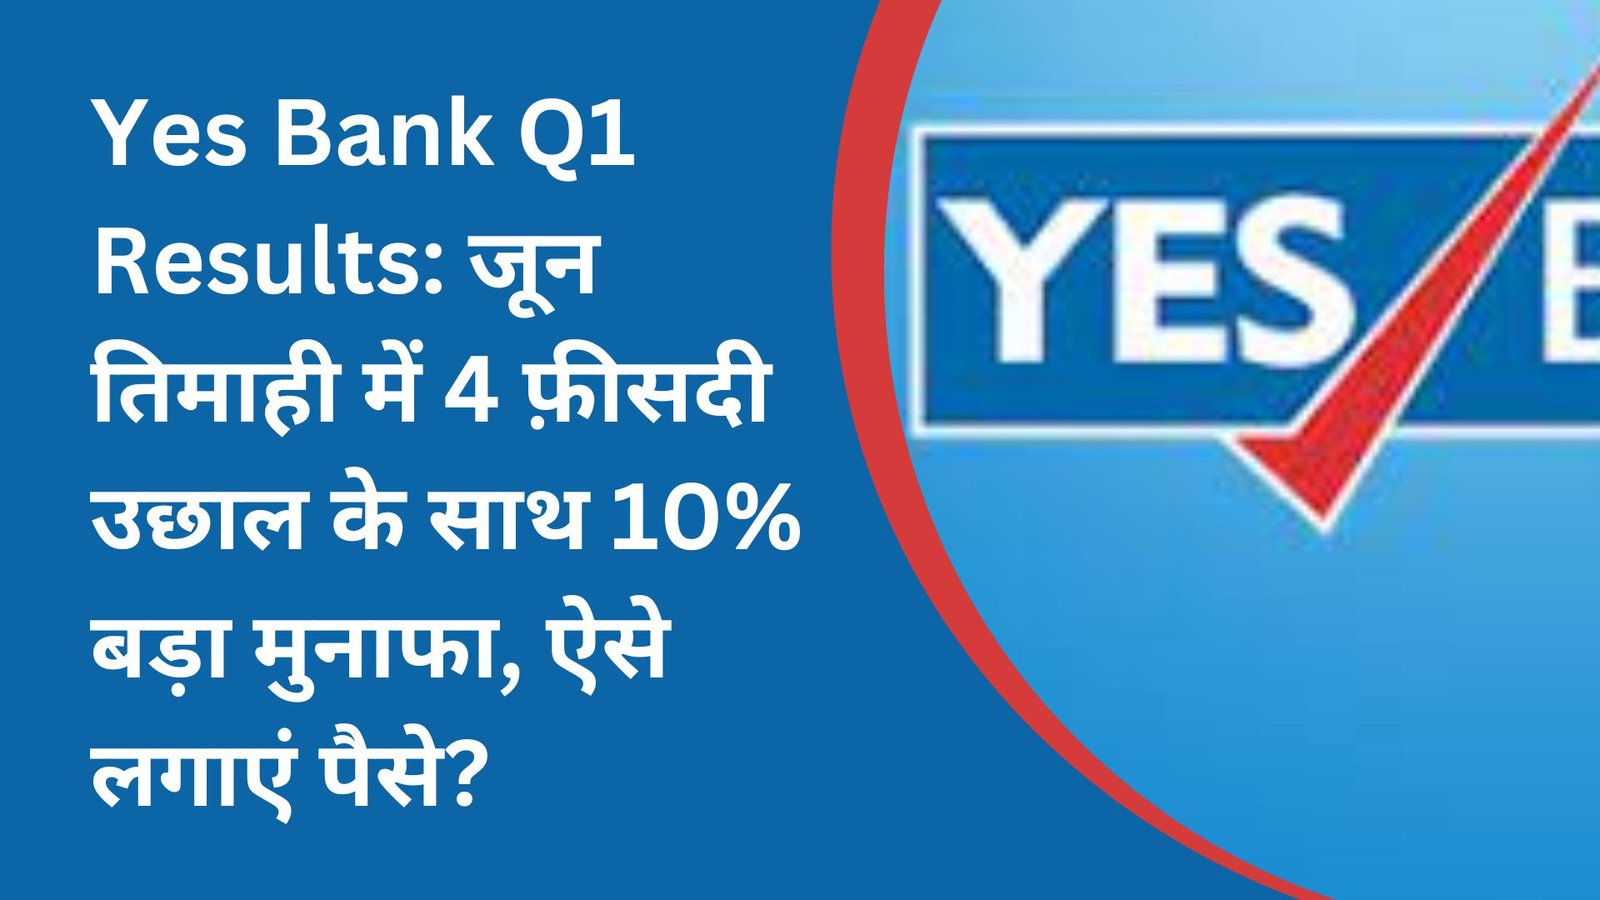 Yes Bank Q1 Results: जून तिमाही में 4 फ़ीसदी उछाल के साथ 10% बड़ा मुनाफा, ऐसे लगाएं पैसे?